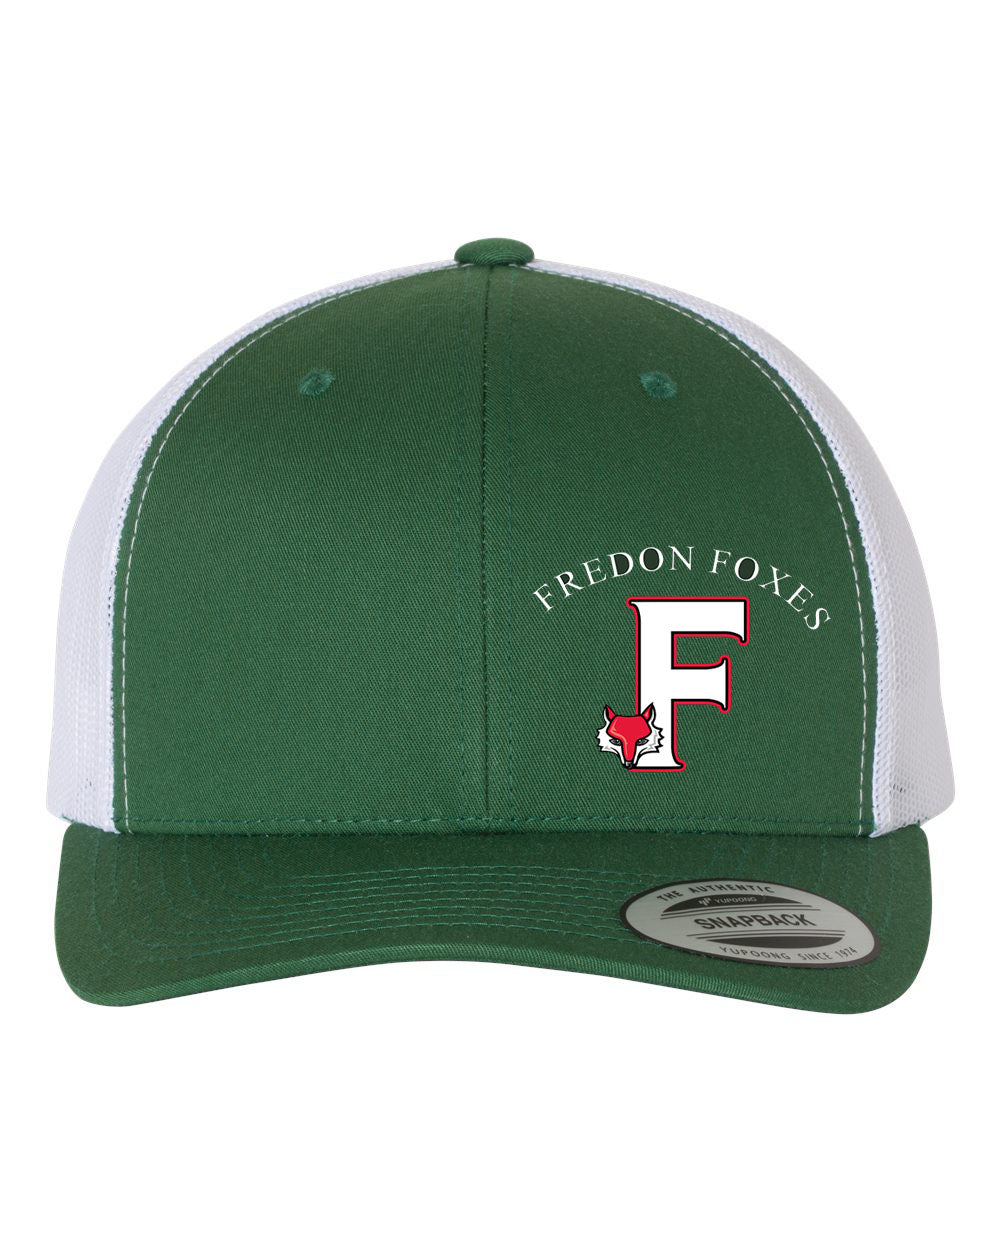 Fredon Design 9 Trucker Hat